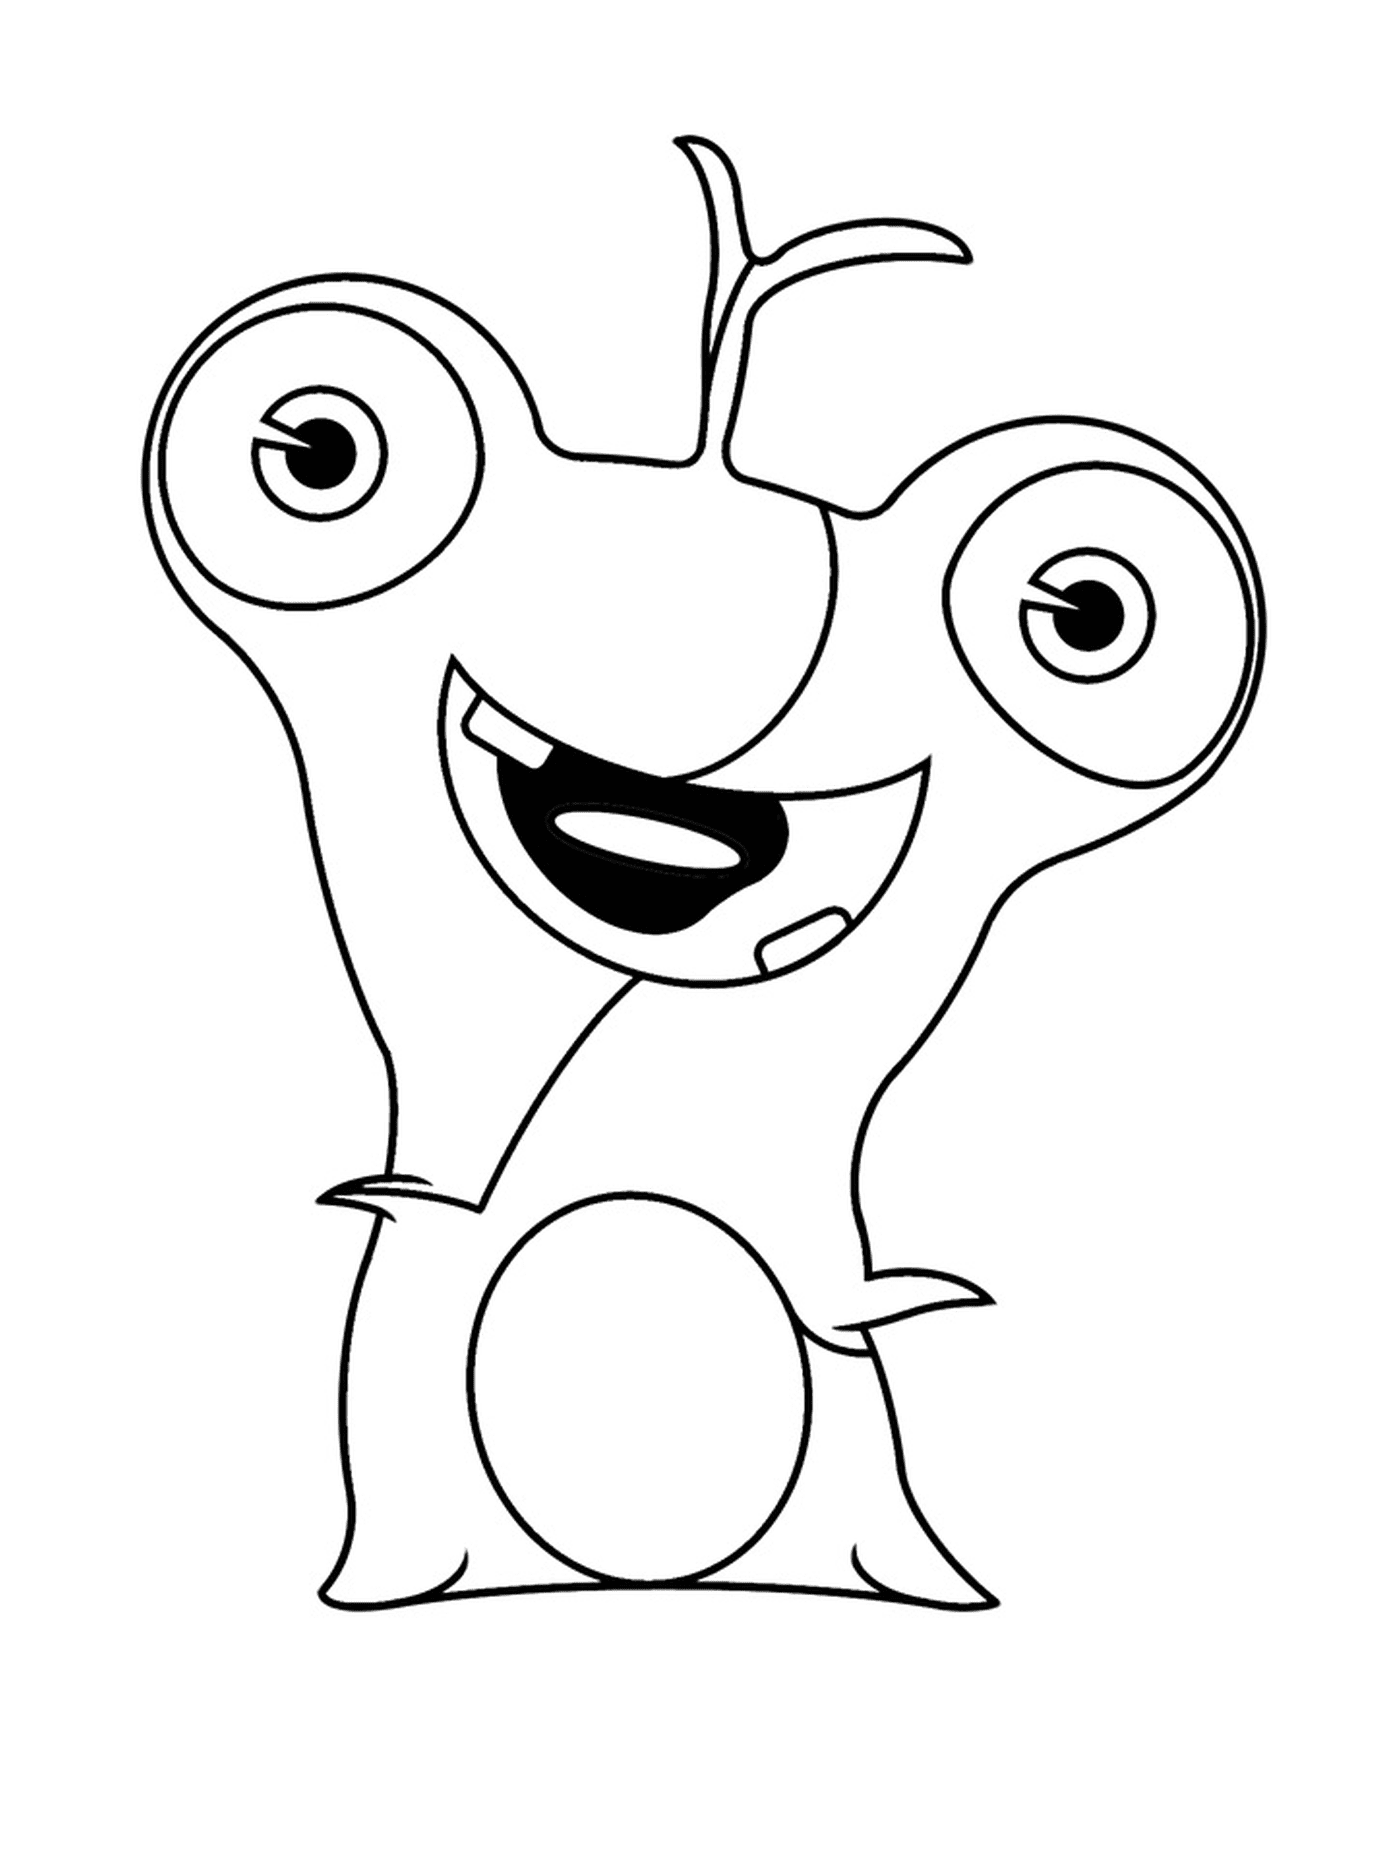  Polero, Zeichentrickfigur 